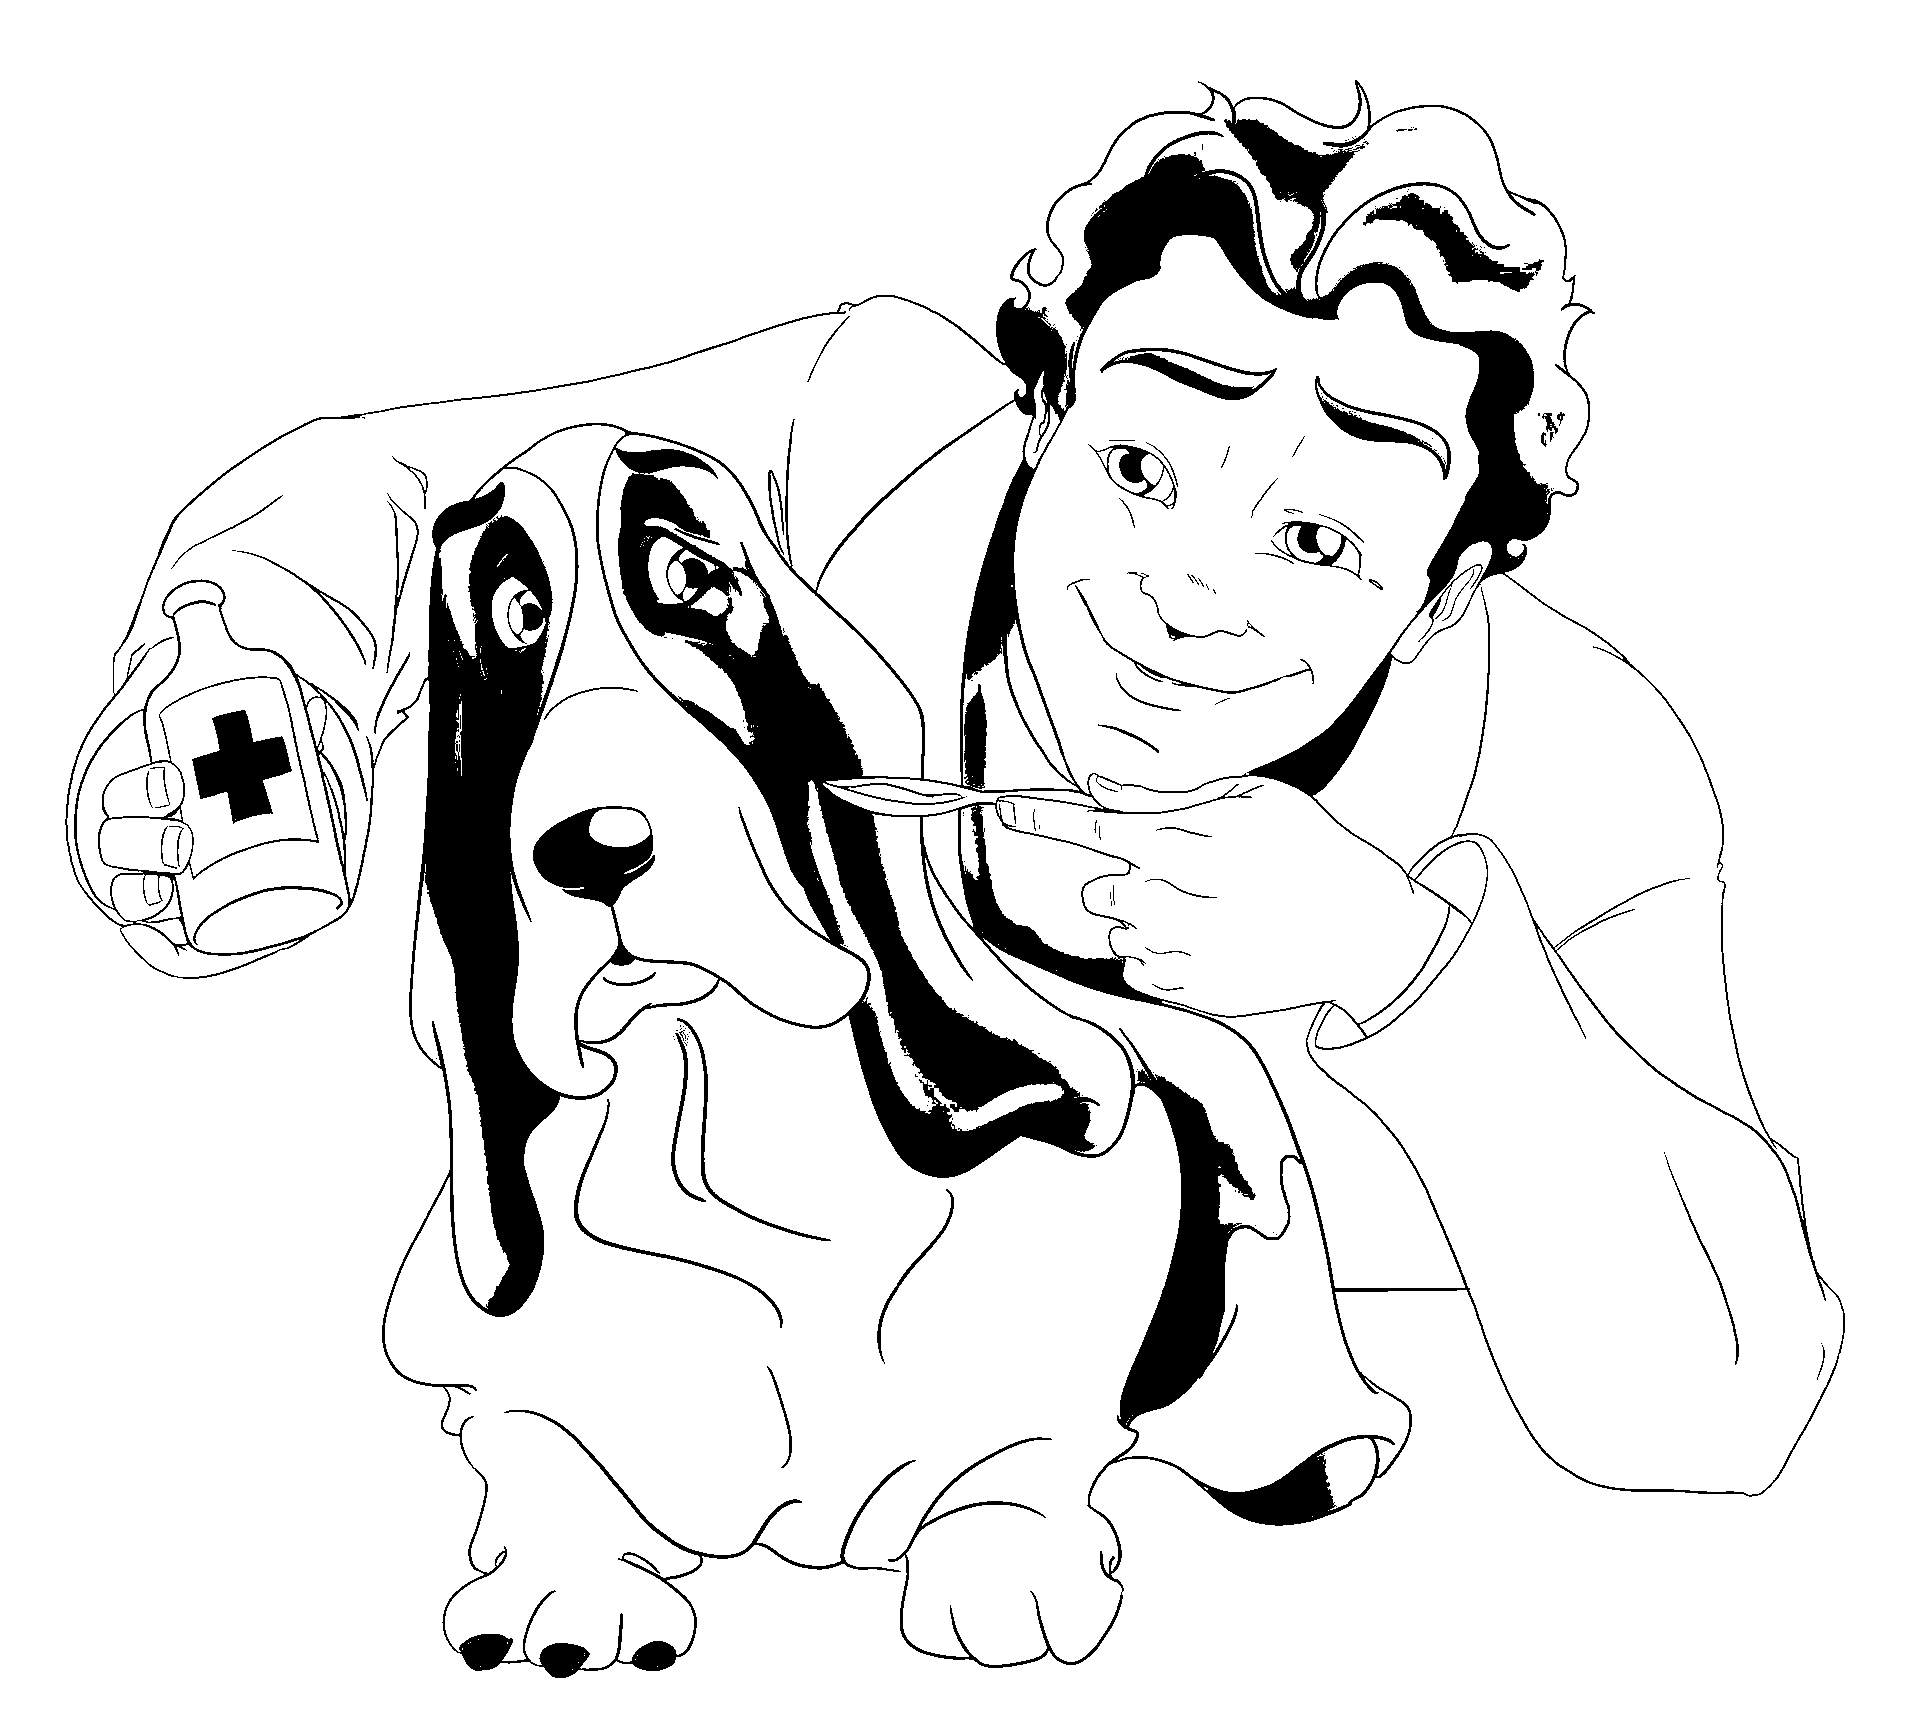 Disegno da colorare di uomo che offre medicina al cane Beagle in stile cartone animato